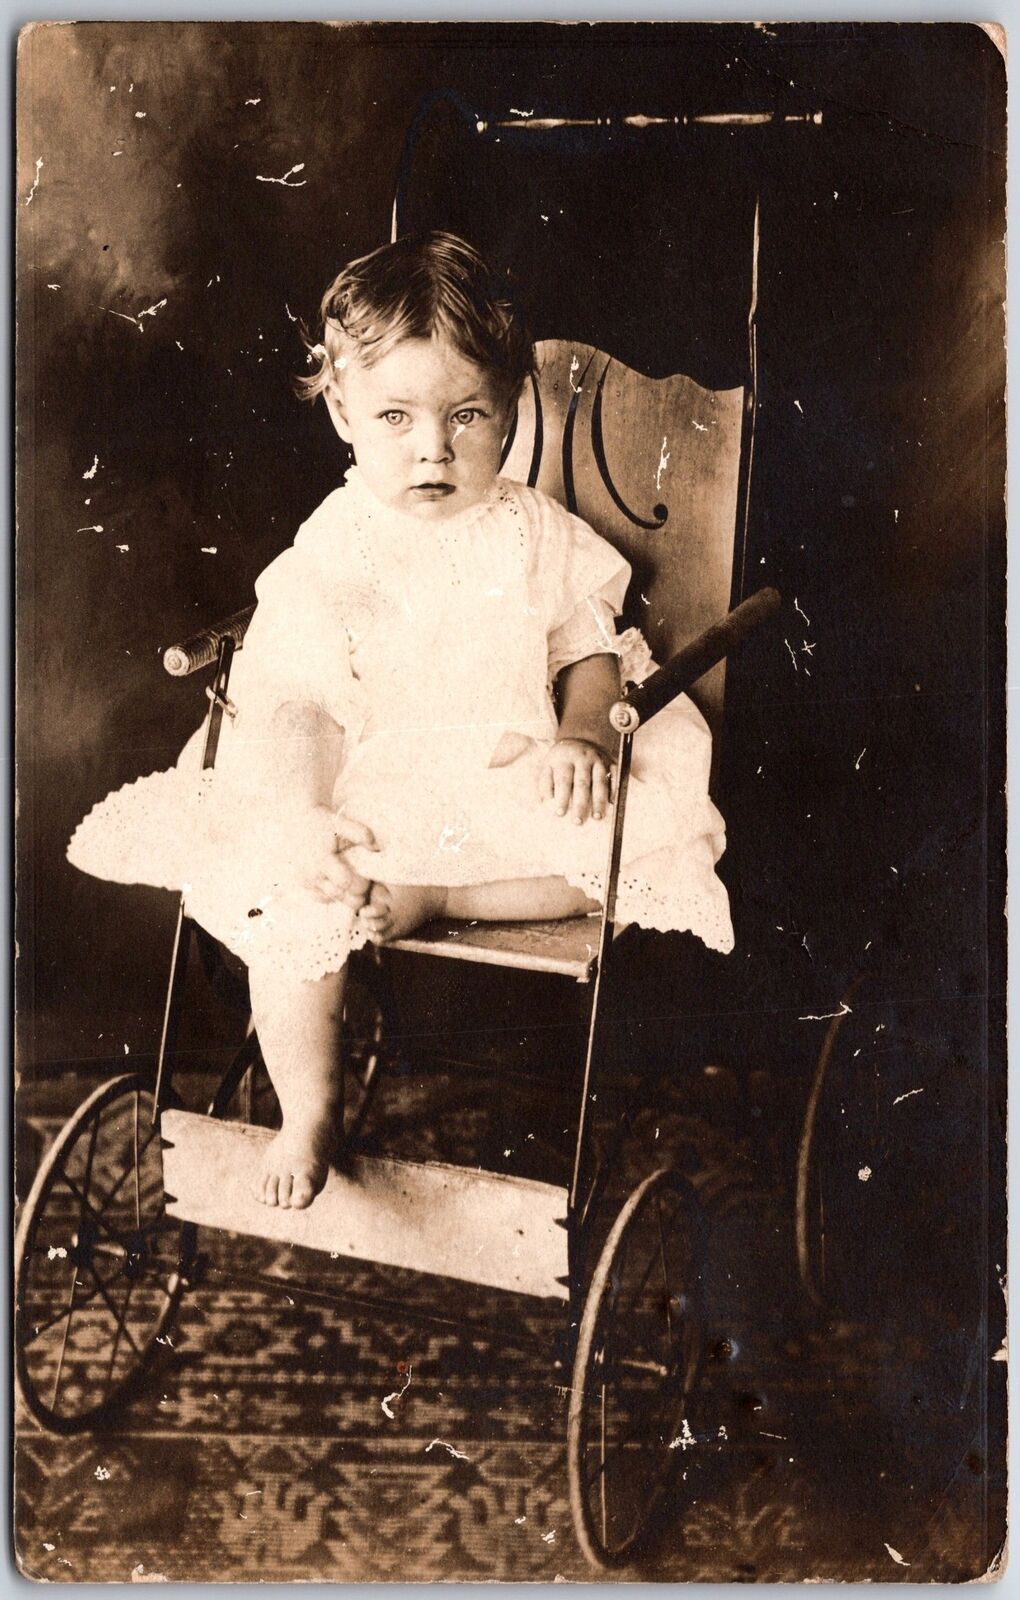 Babies & Children Photograph Souvernir Picture Vintage Postcard